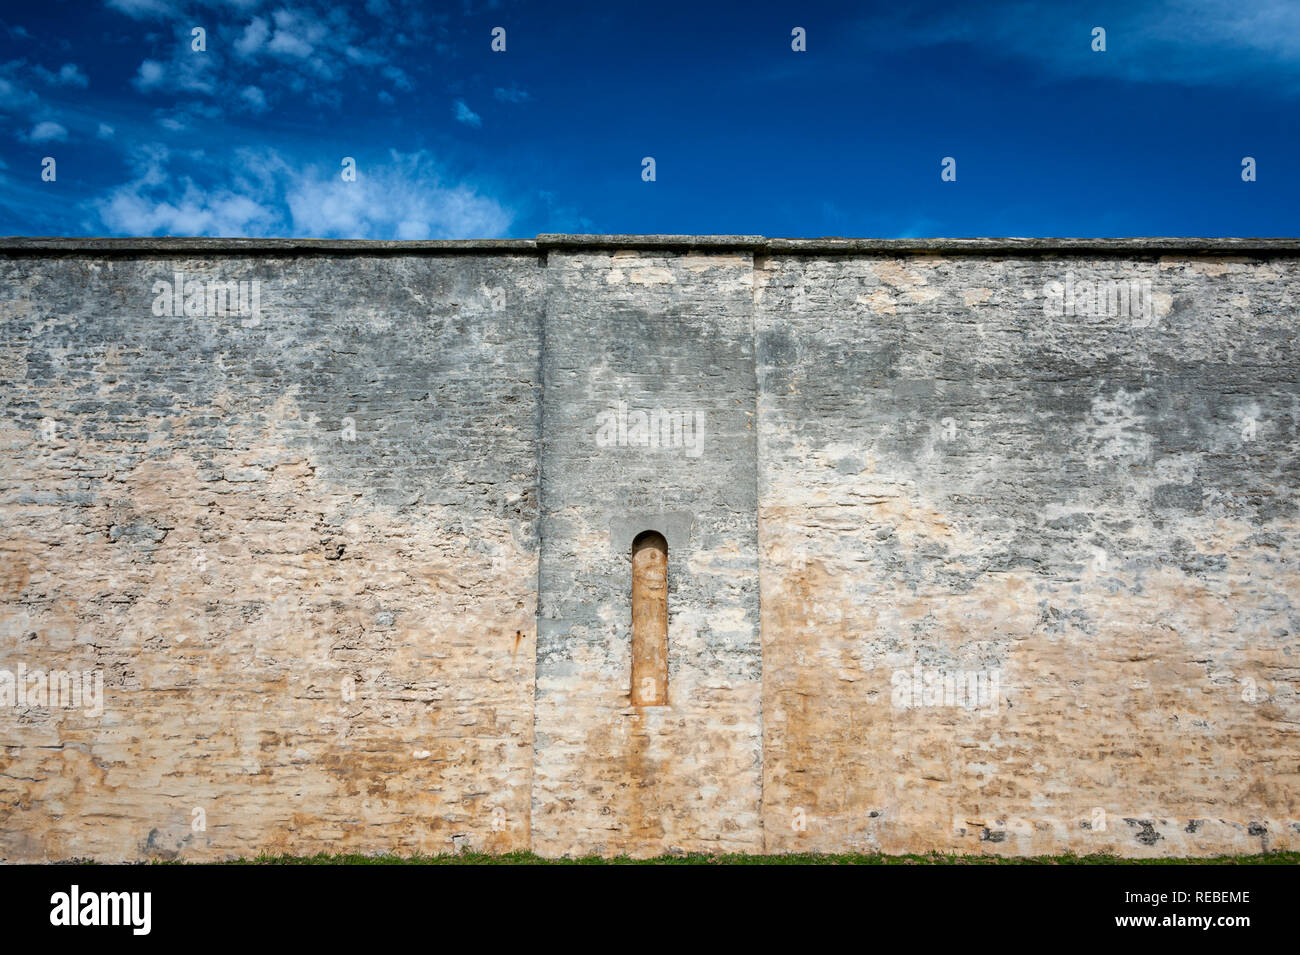 Imponente parete della colonia penale resti in Norfolk Island in Australia Foto Stock